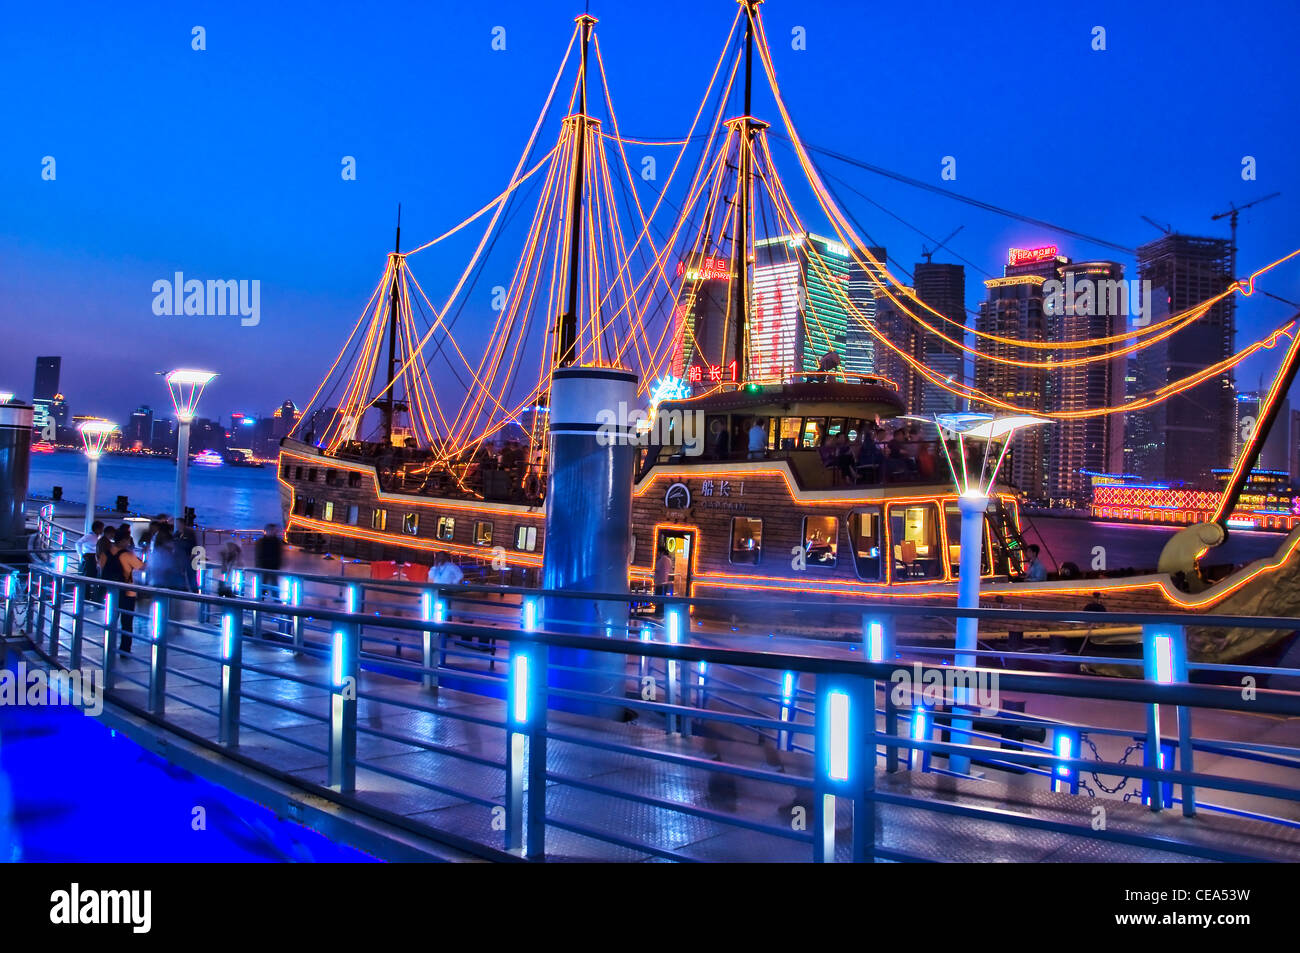 Una barca a Huangpu River Cruises dock da notte - Shanghai, Bund sud - Cina Foto Stock